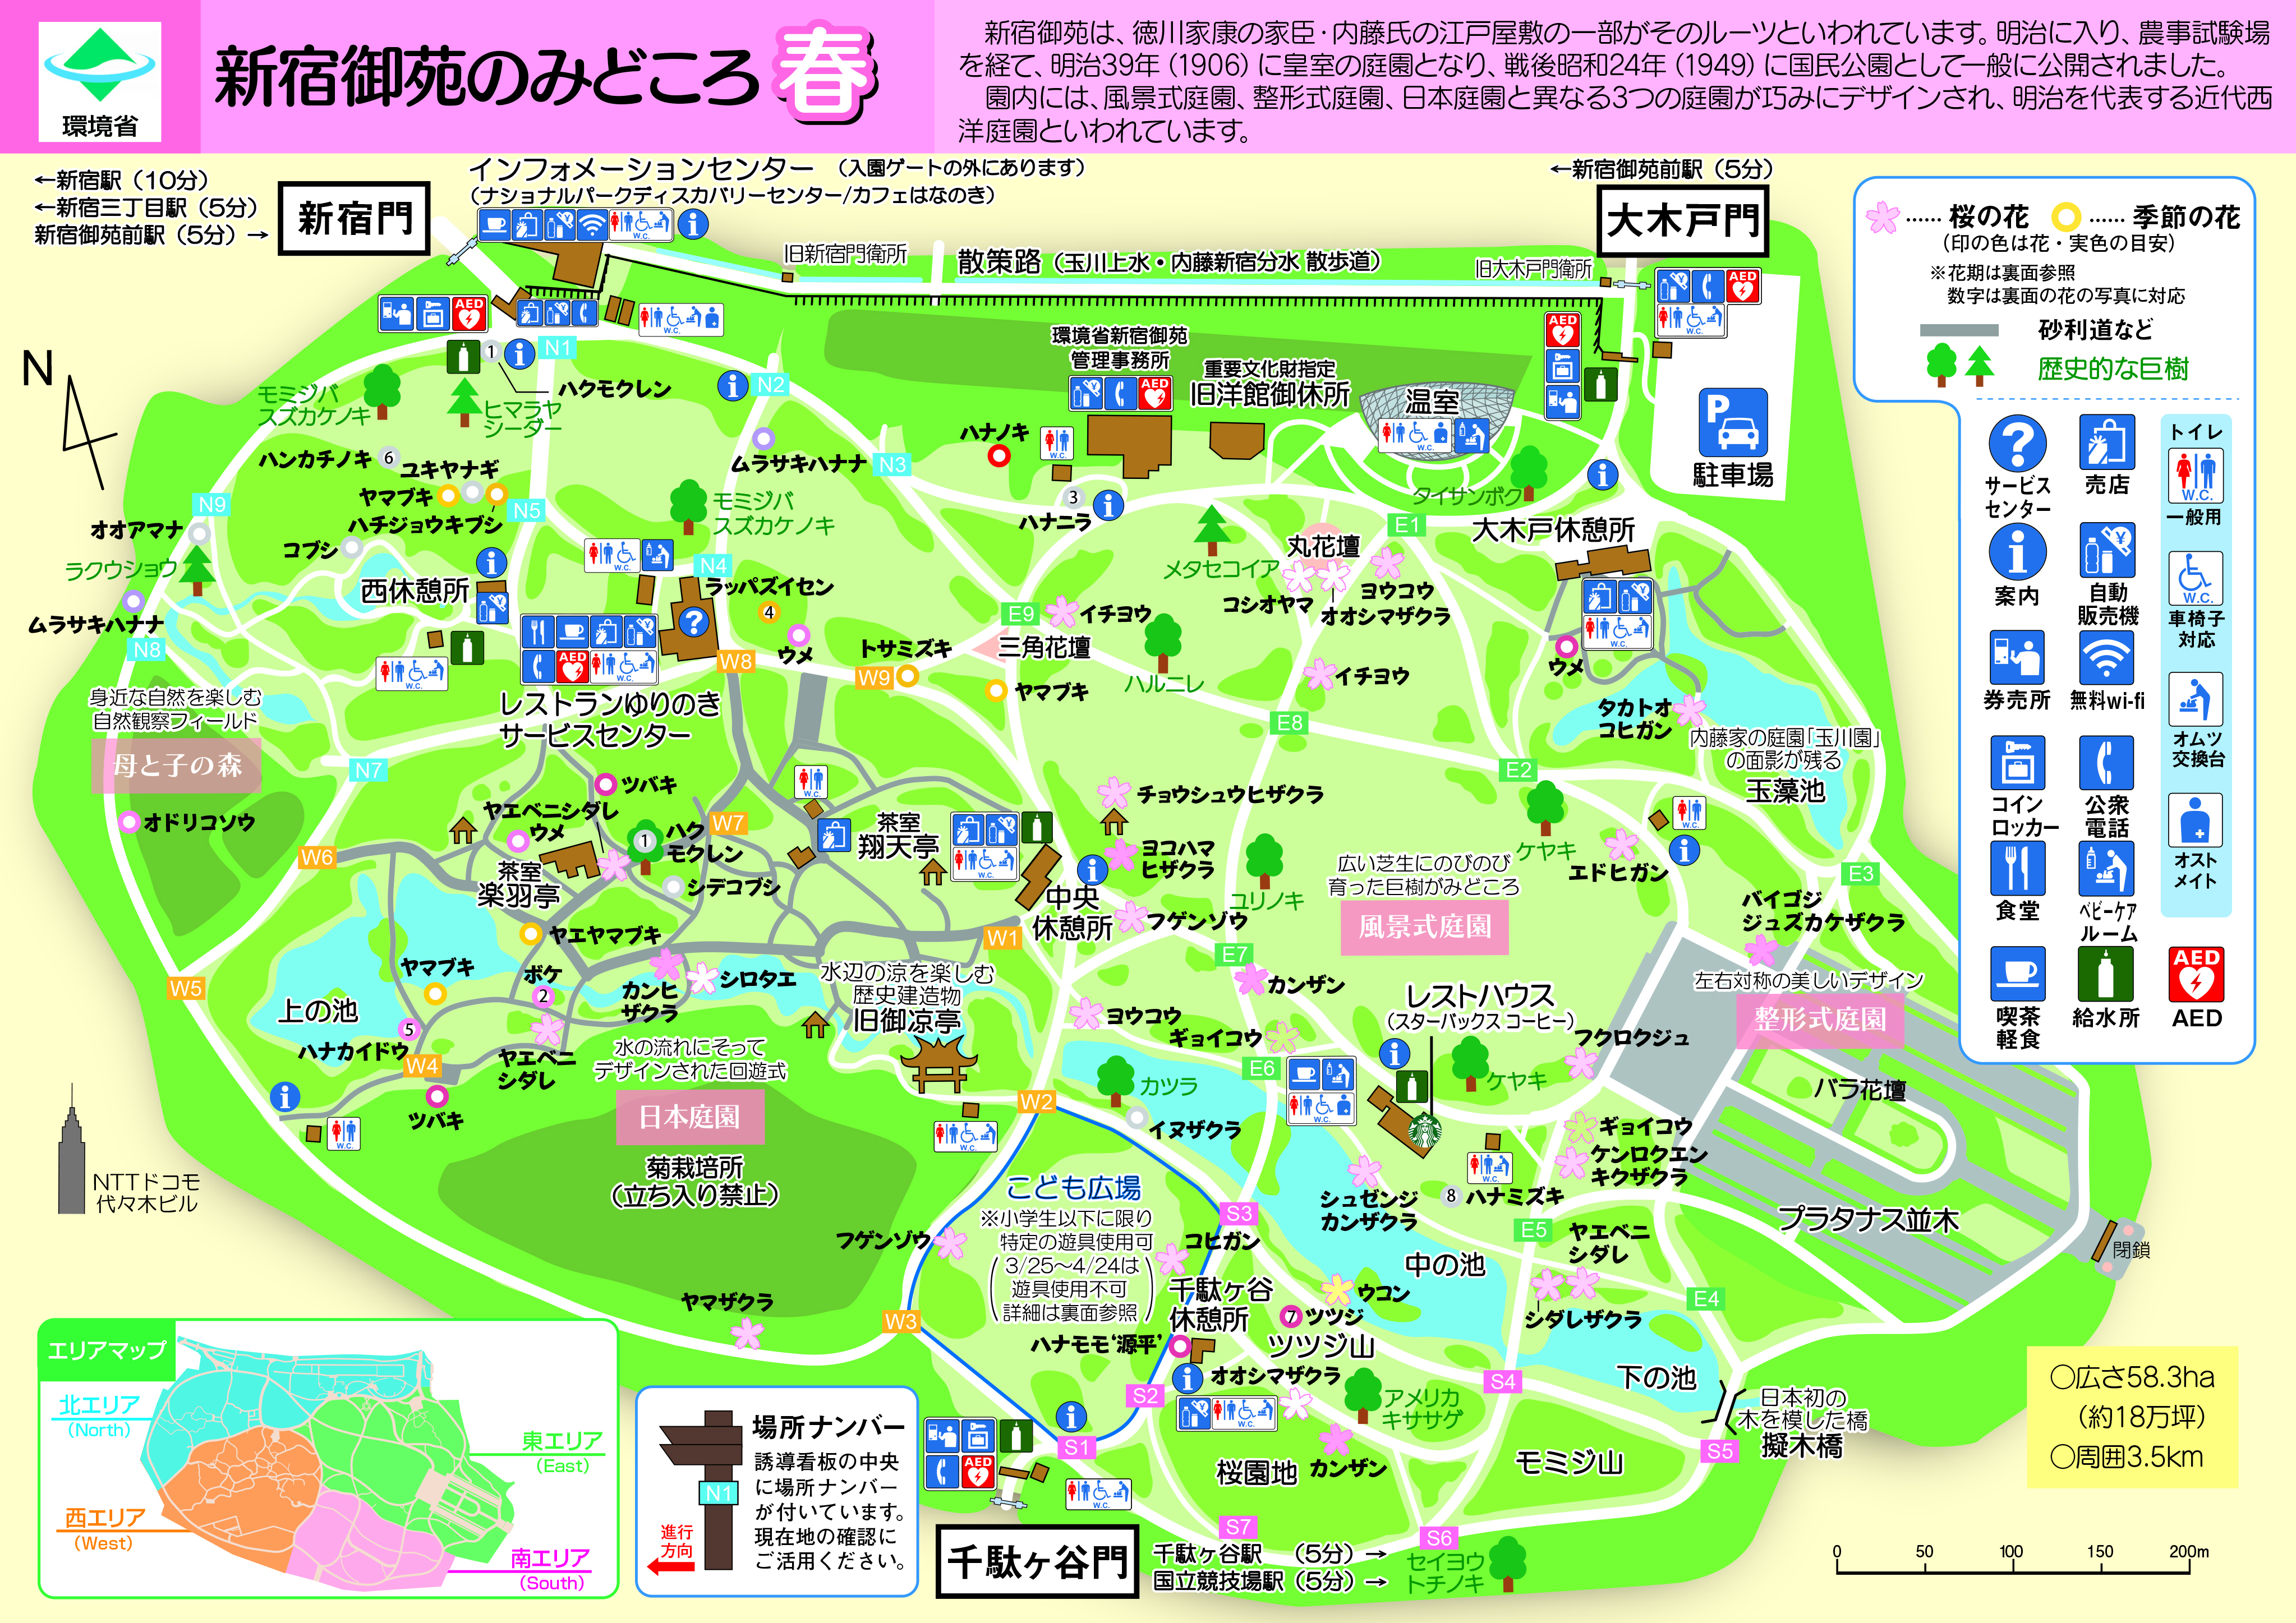 http://www.env.go.jp/garden/shinjukugyoen/files/19b59710e5b03c60d5708144d7598c6b.jpg